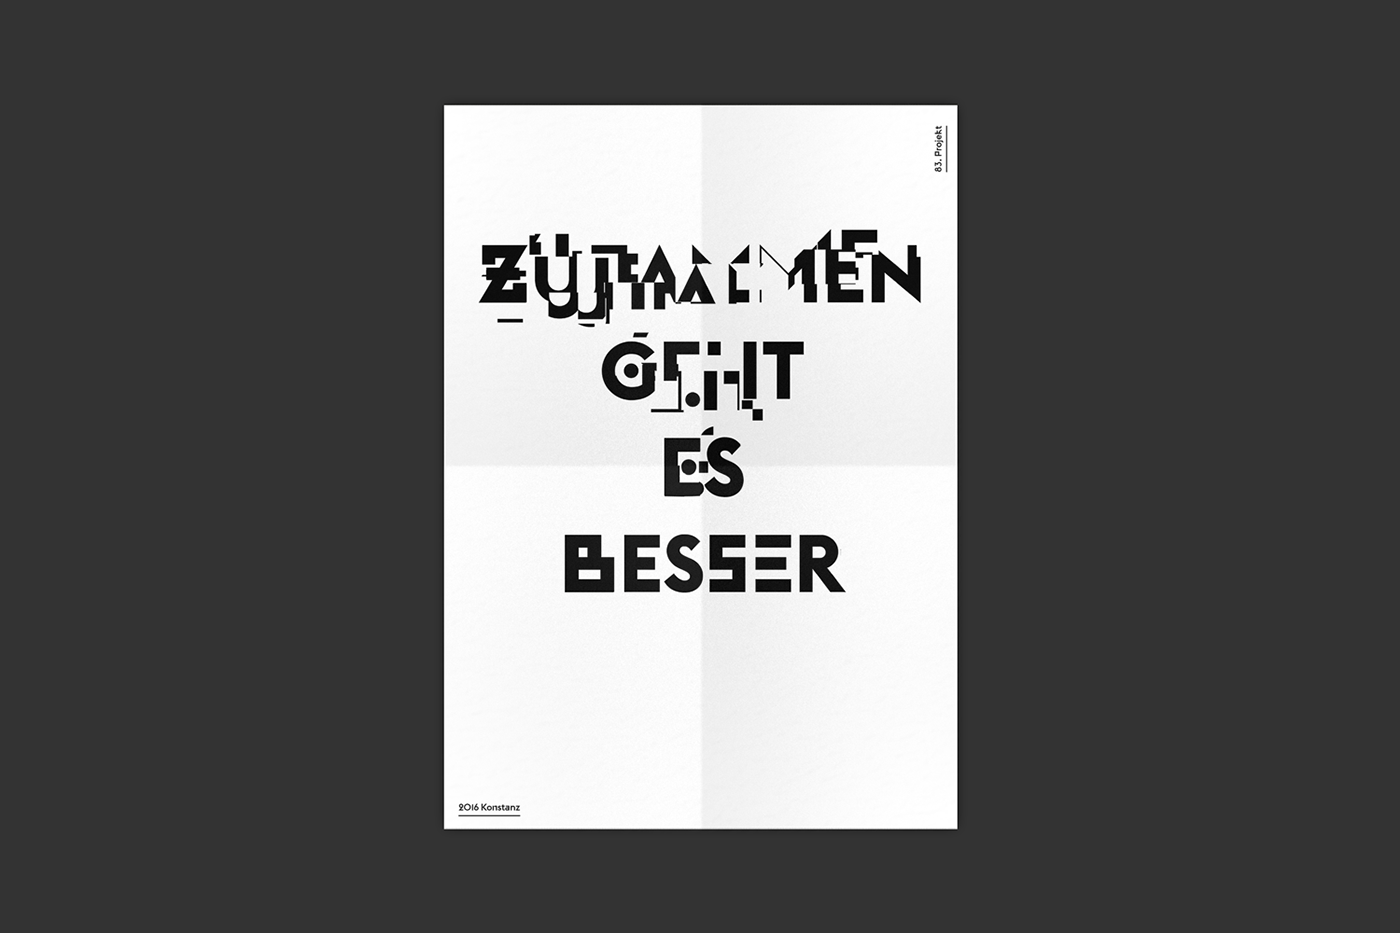 posters berlin plakat htwg jean bw